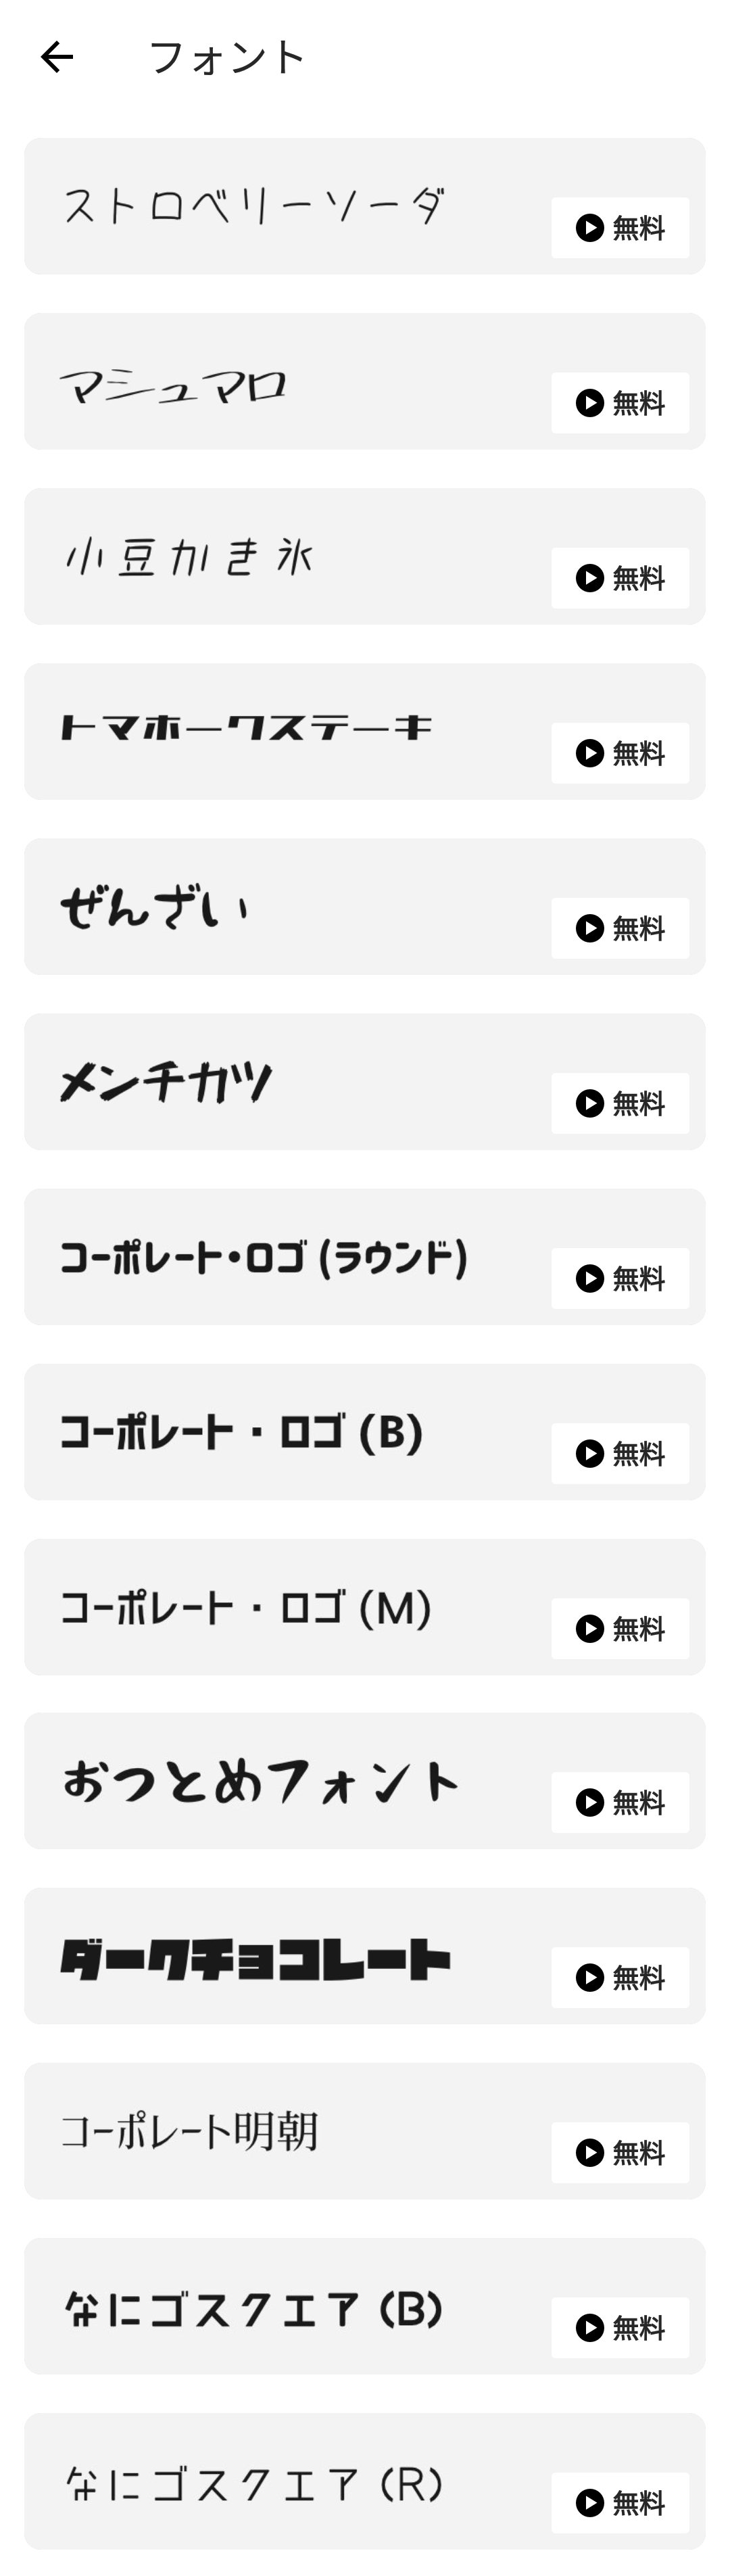 アプリ内でダウンロード可能な日本語フリーフォントのスクリーンショット